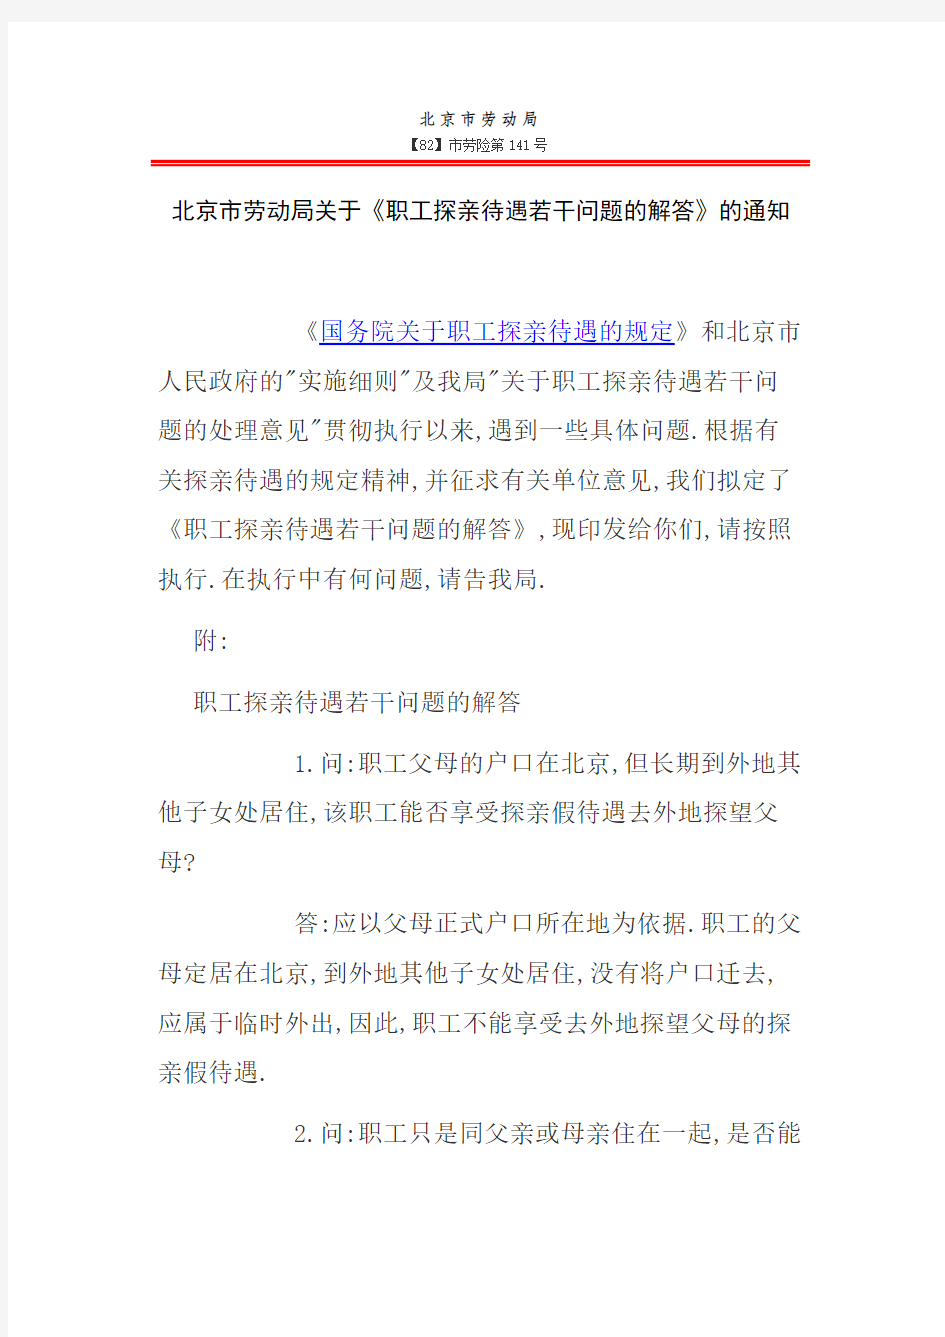 北京市劳动局关于《职工探亲待遇若干问题的解答》的通知